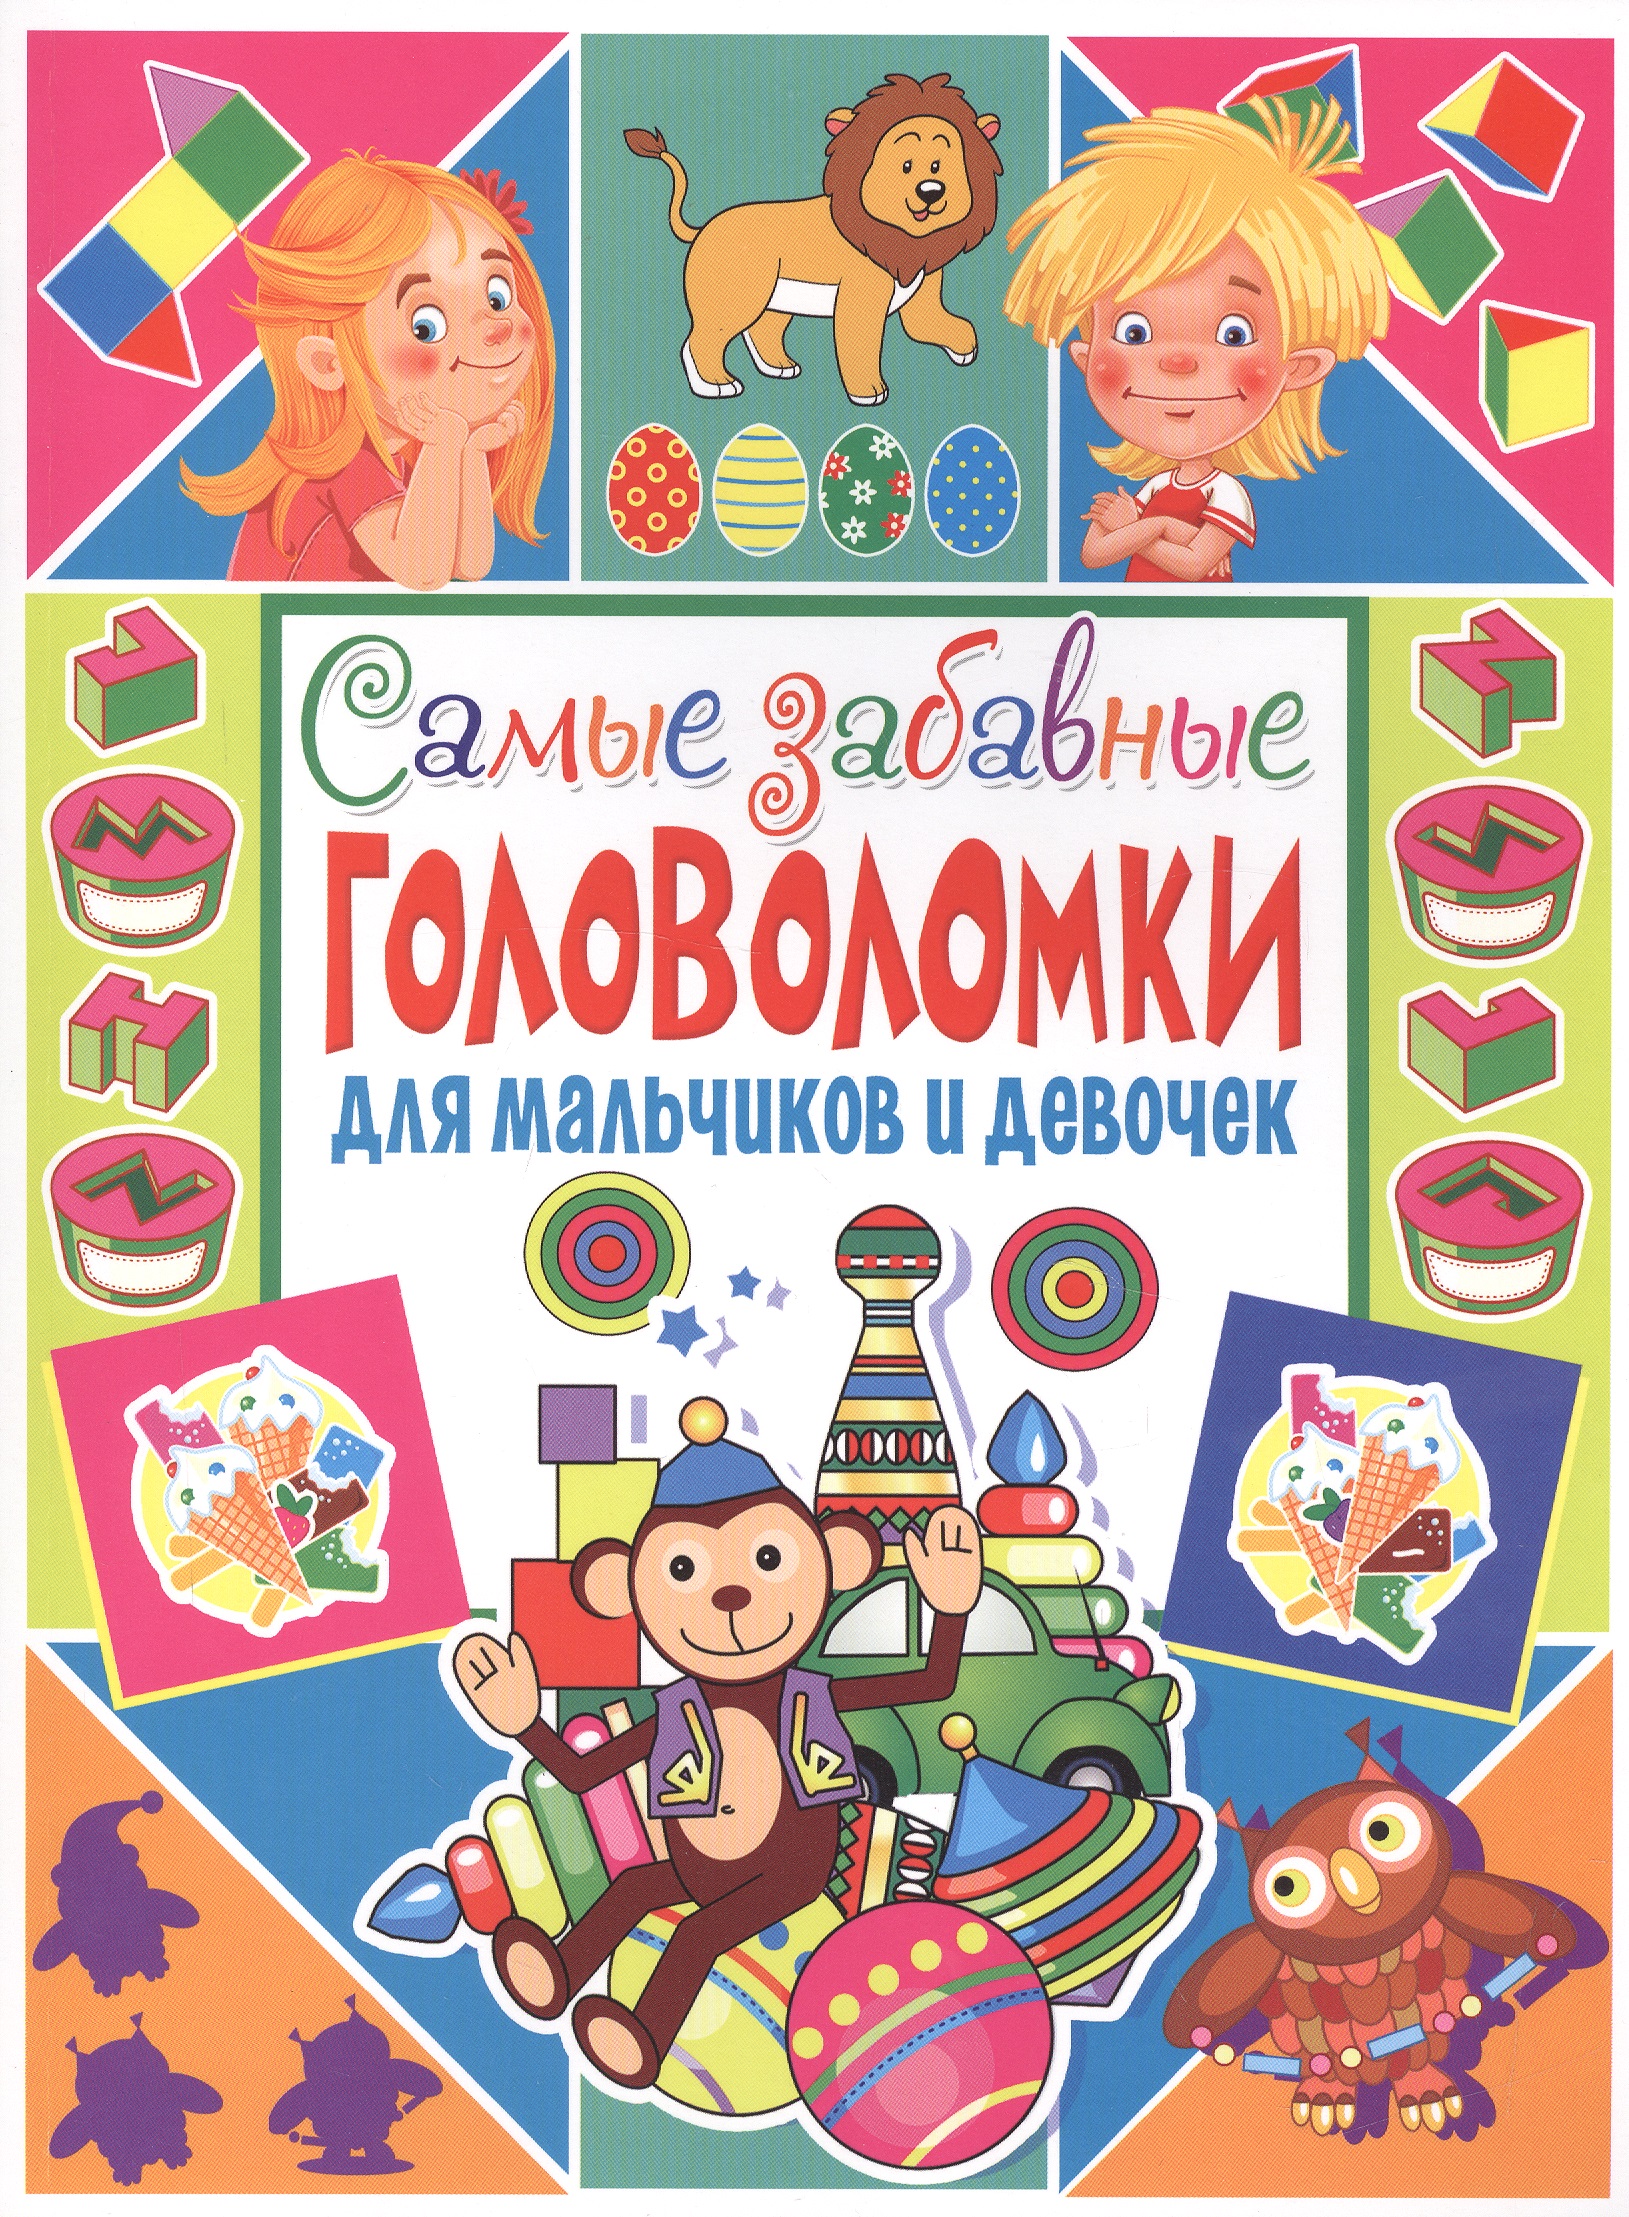 Скиба Тамара Викторовна - Самые забавные головоломки для мальчиков и девочек